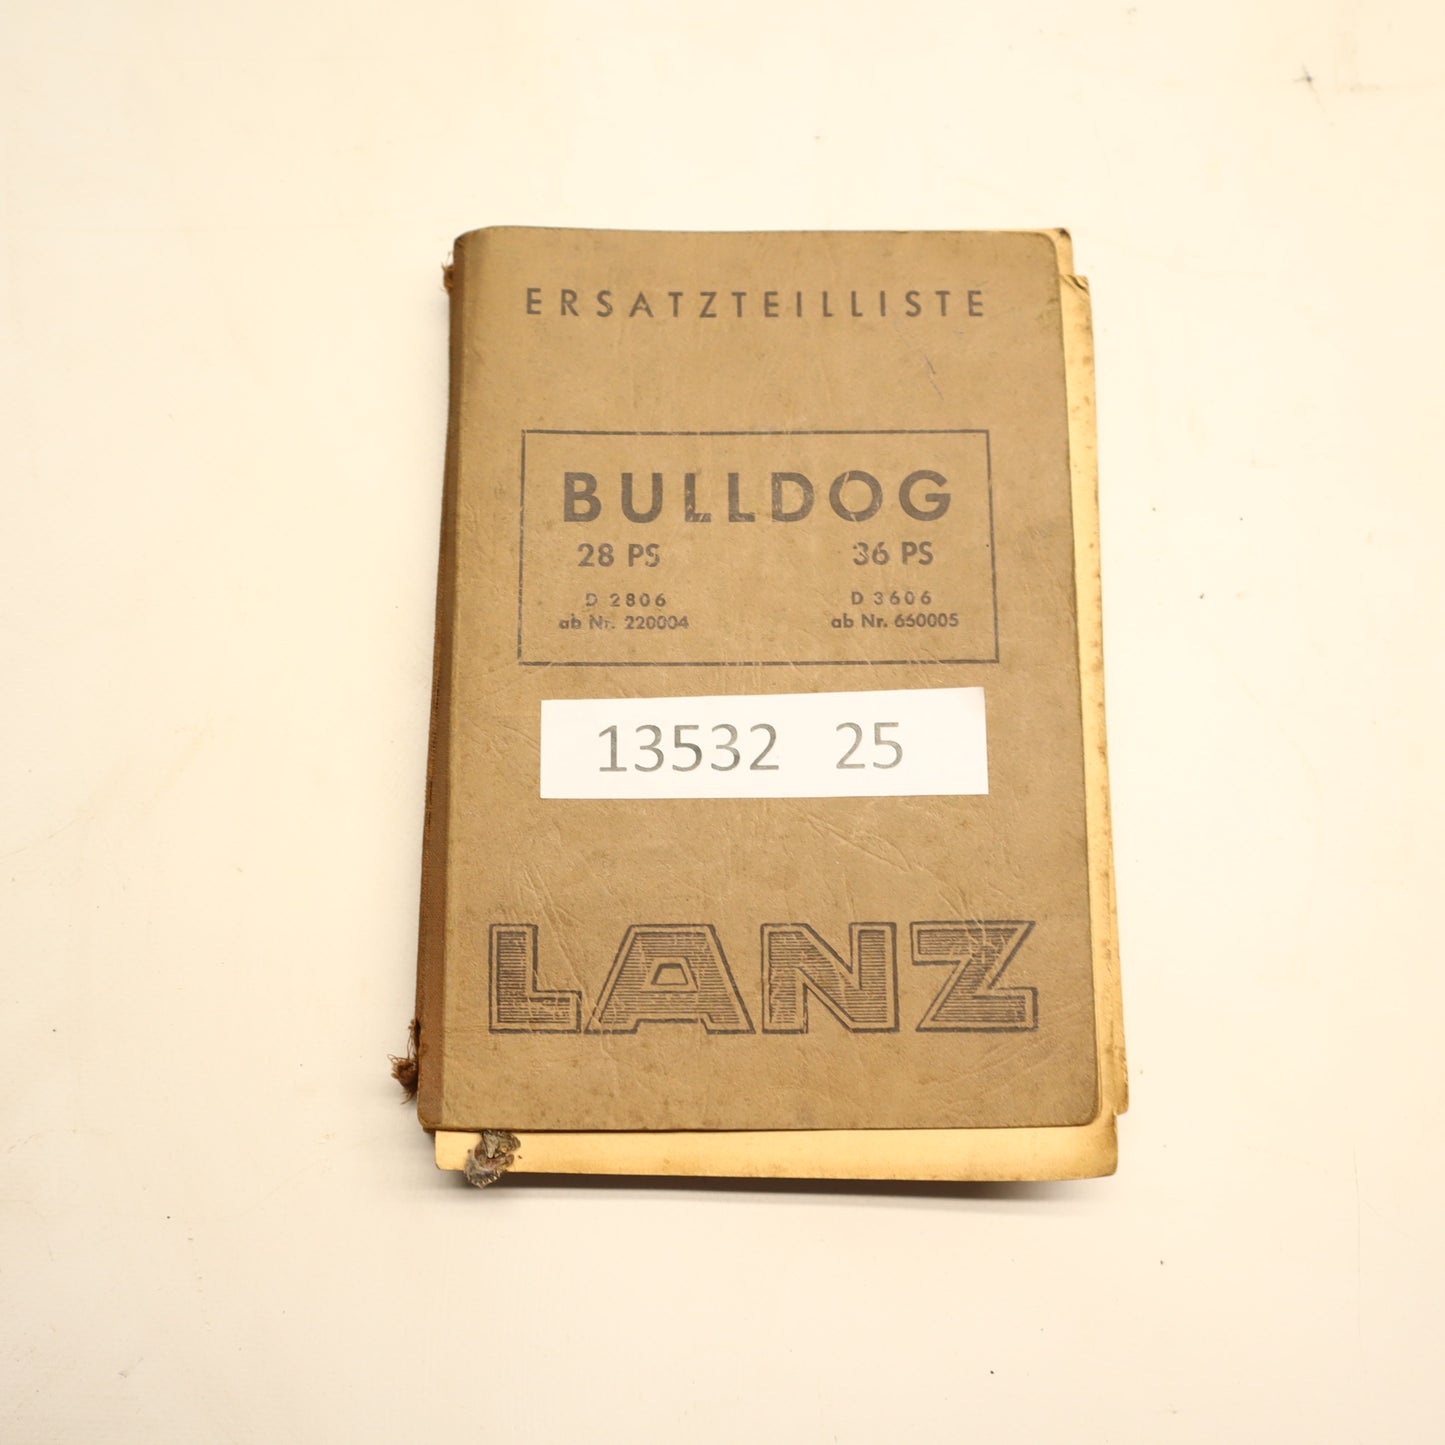 Lanz Bulldog 28 PS 2806  / 36 PS 3606